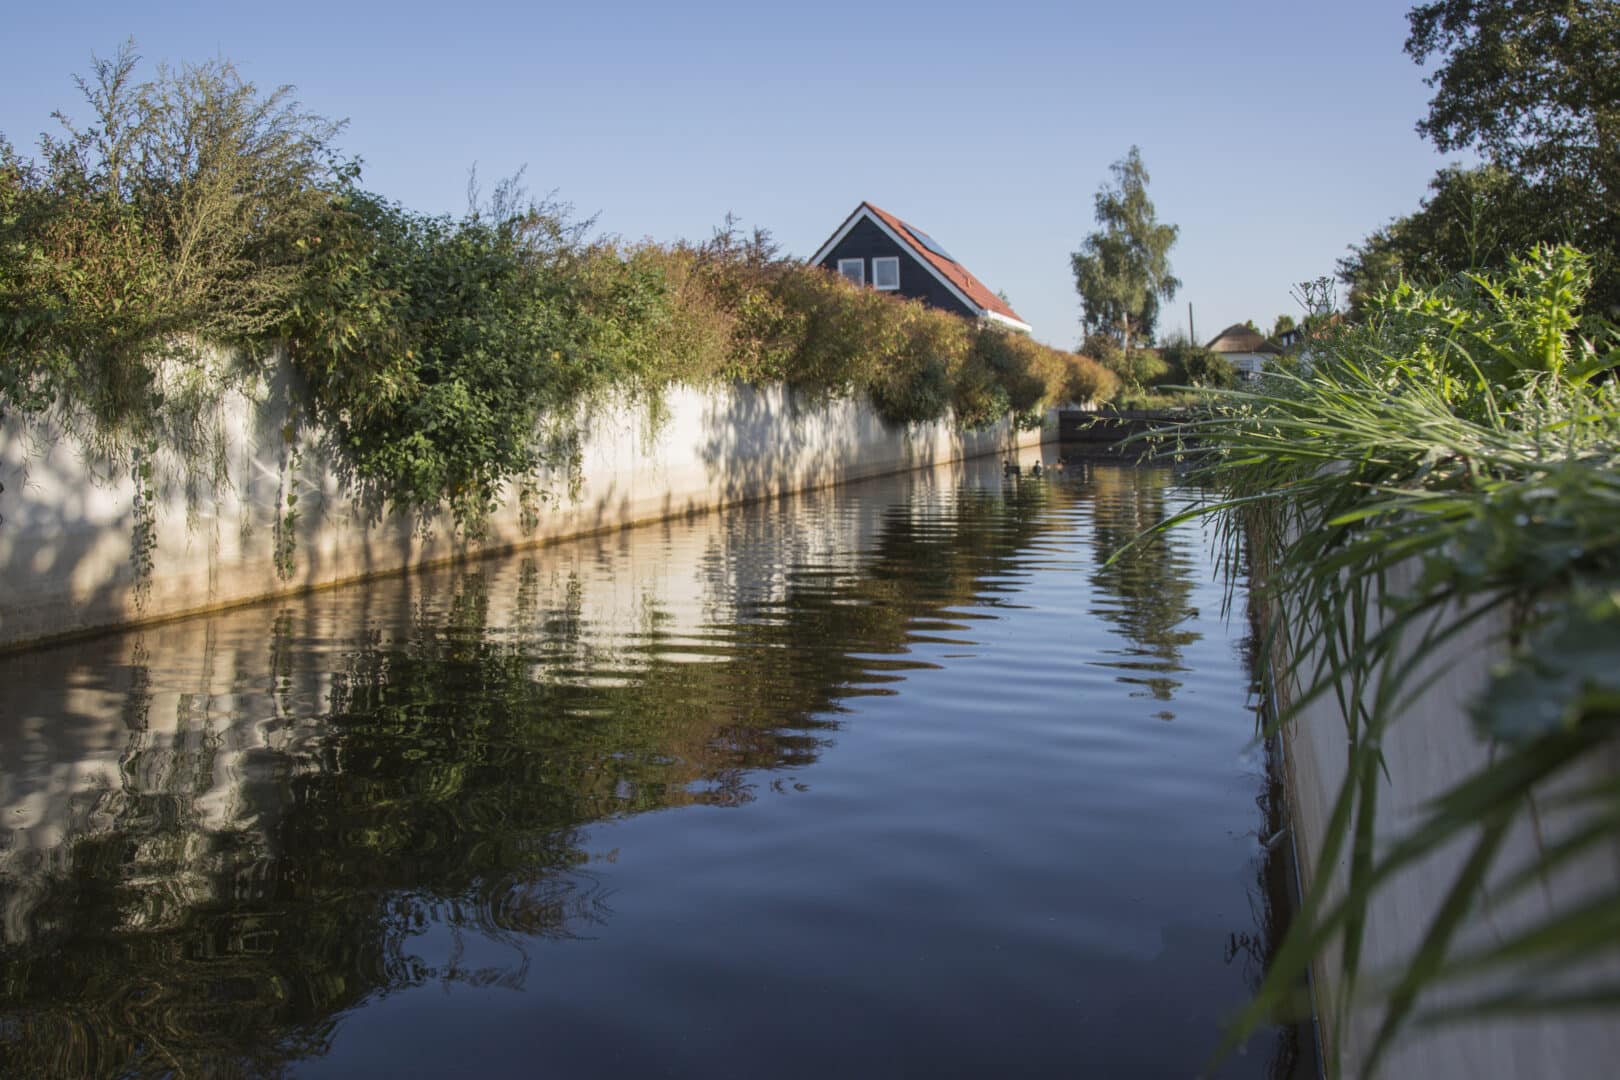 Bosch Beton - Duurzame waterkering in nieuwbouwwijk Nijkerkerveen